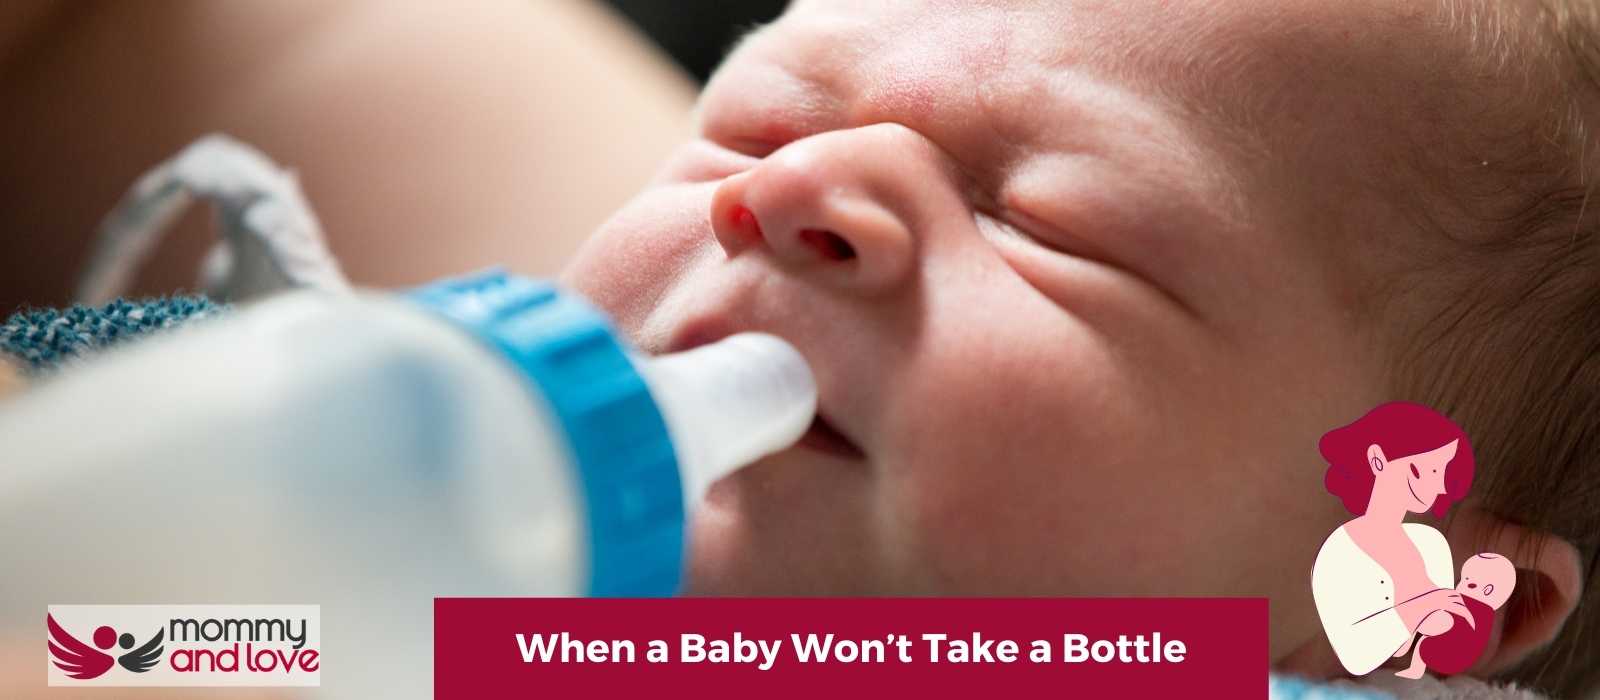 When a Baby Won’t Take a Bottle